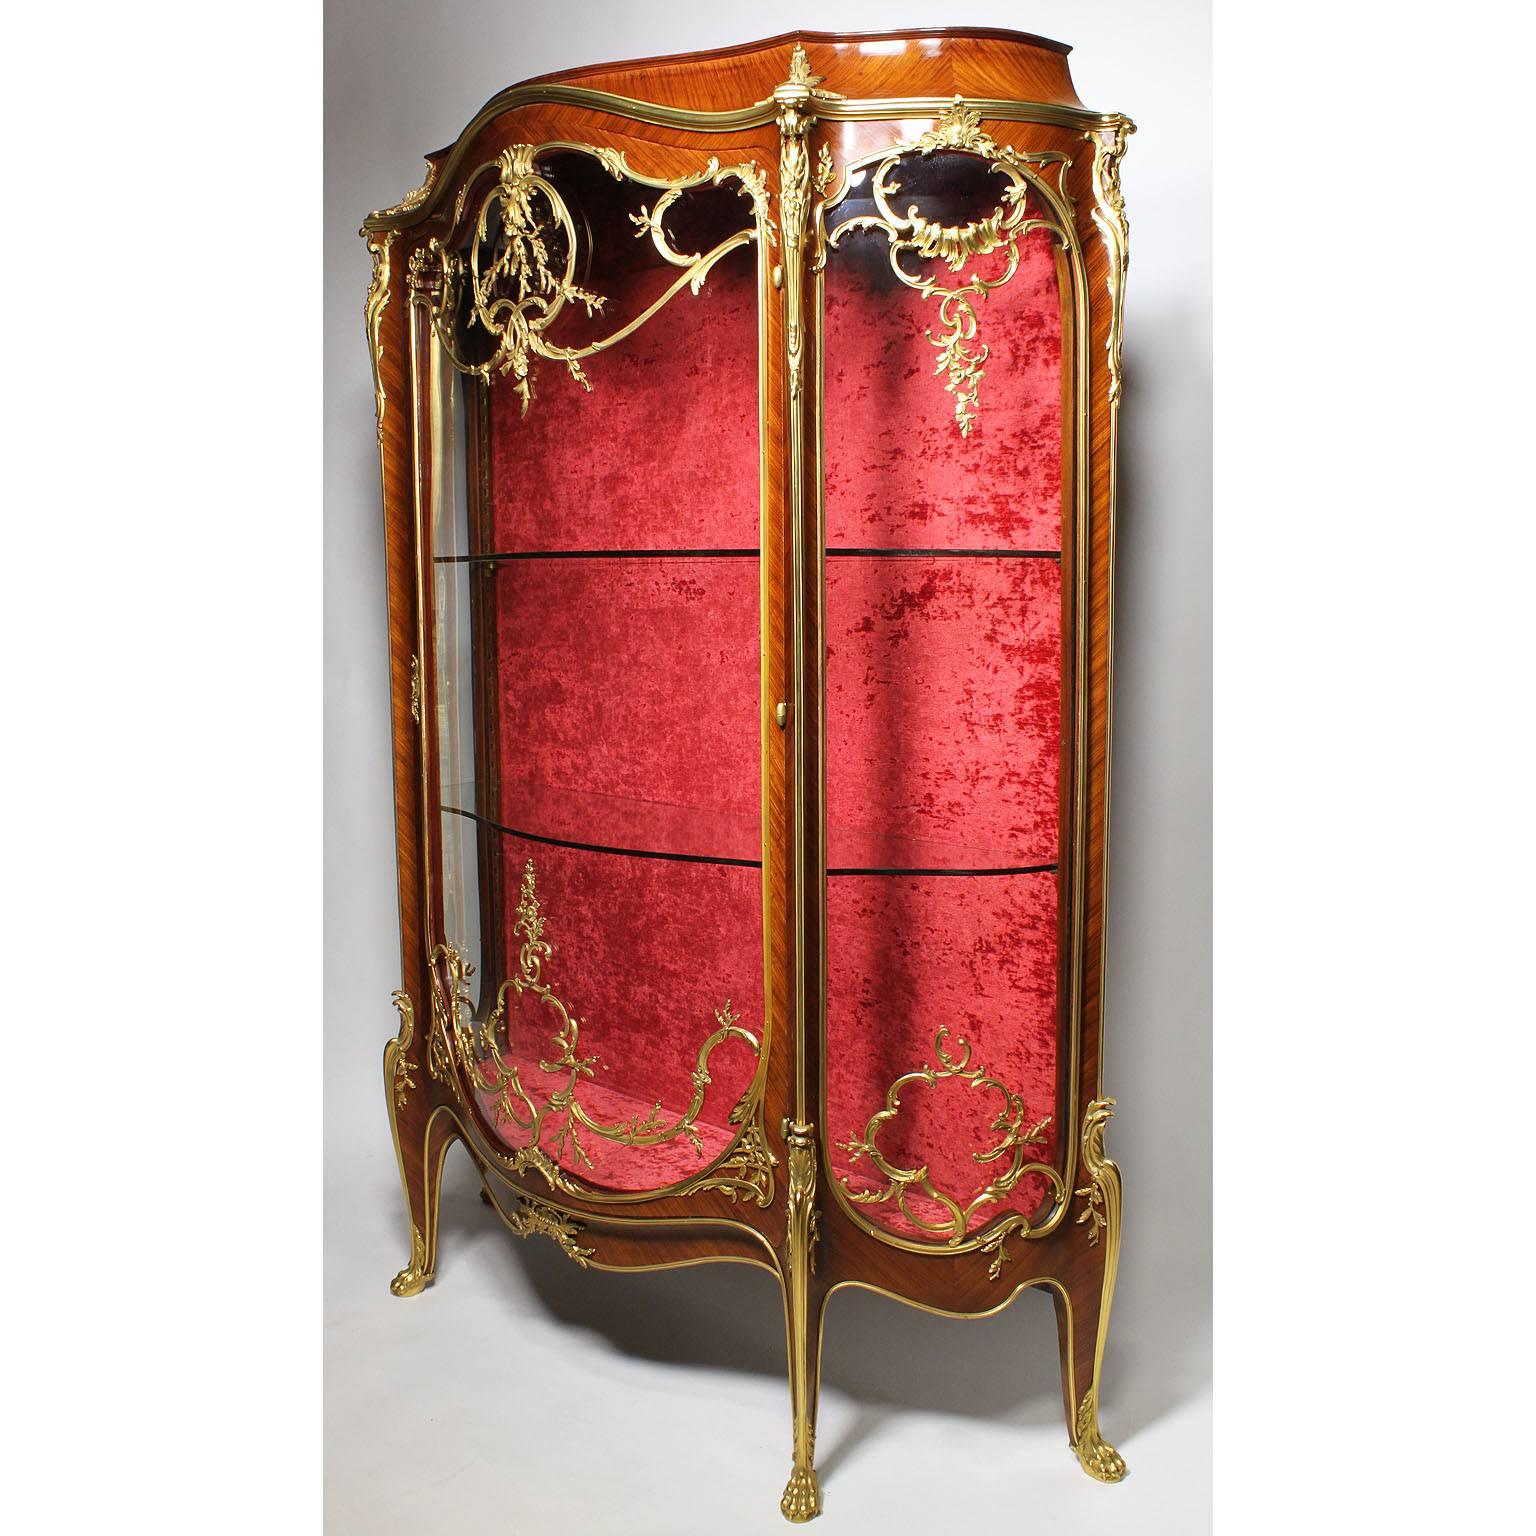 Vitrine à une porte de style Louis XV en bois de roi et bronze doré, le meuble en forme de demilune avec un capot arqué, une garniture moulée au-dessus d'une porte vitrée bombée encadrée de rocaille dans un rinceau en 